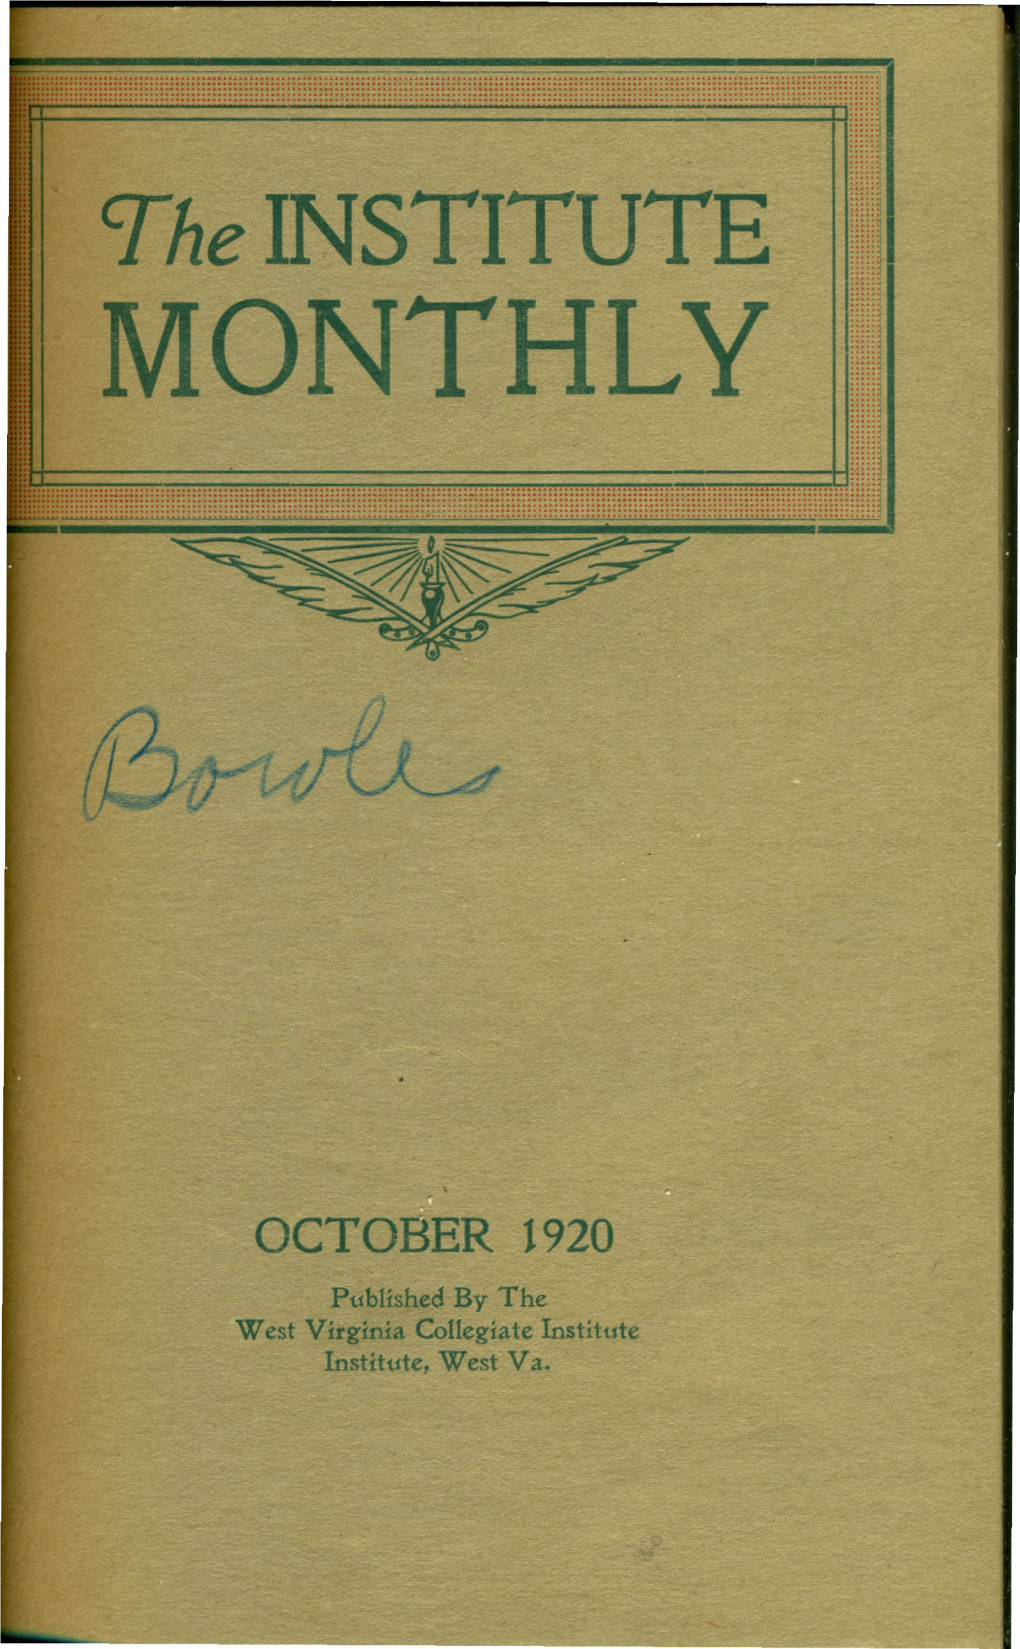 OCTOBER 1920 No.1